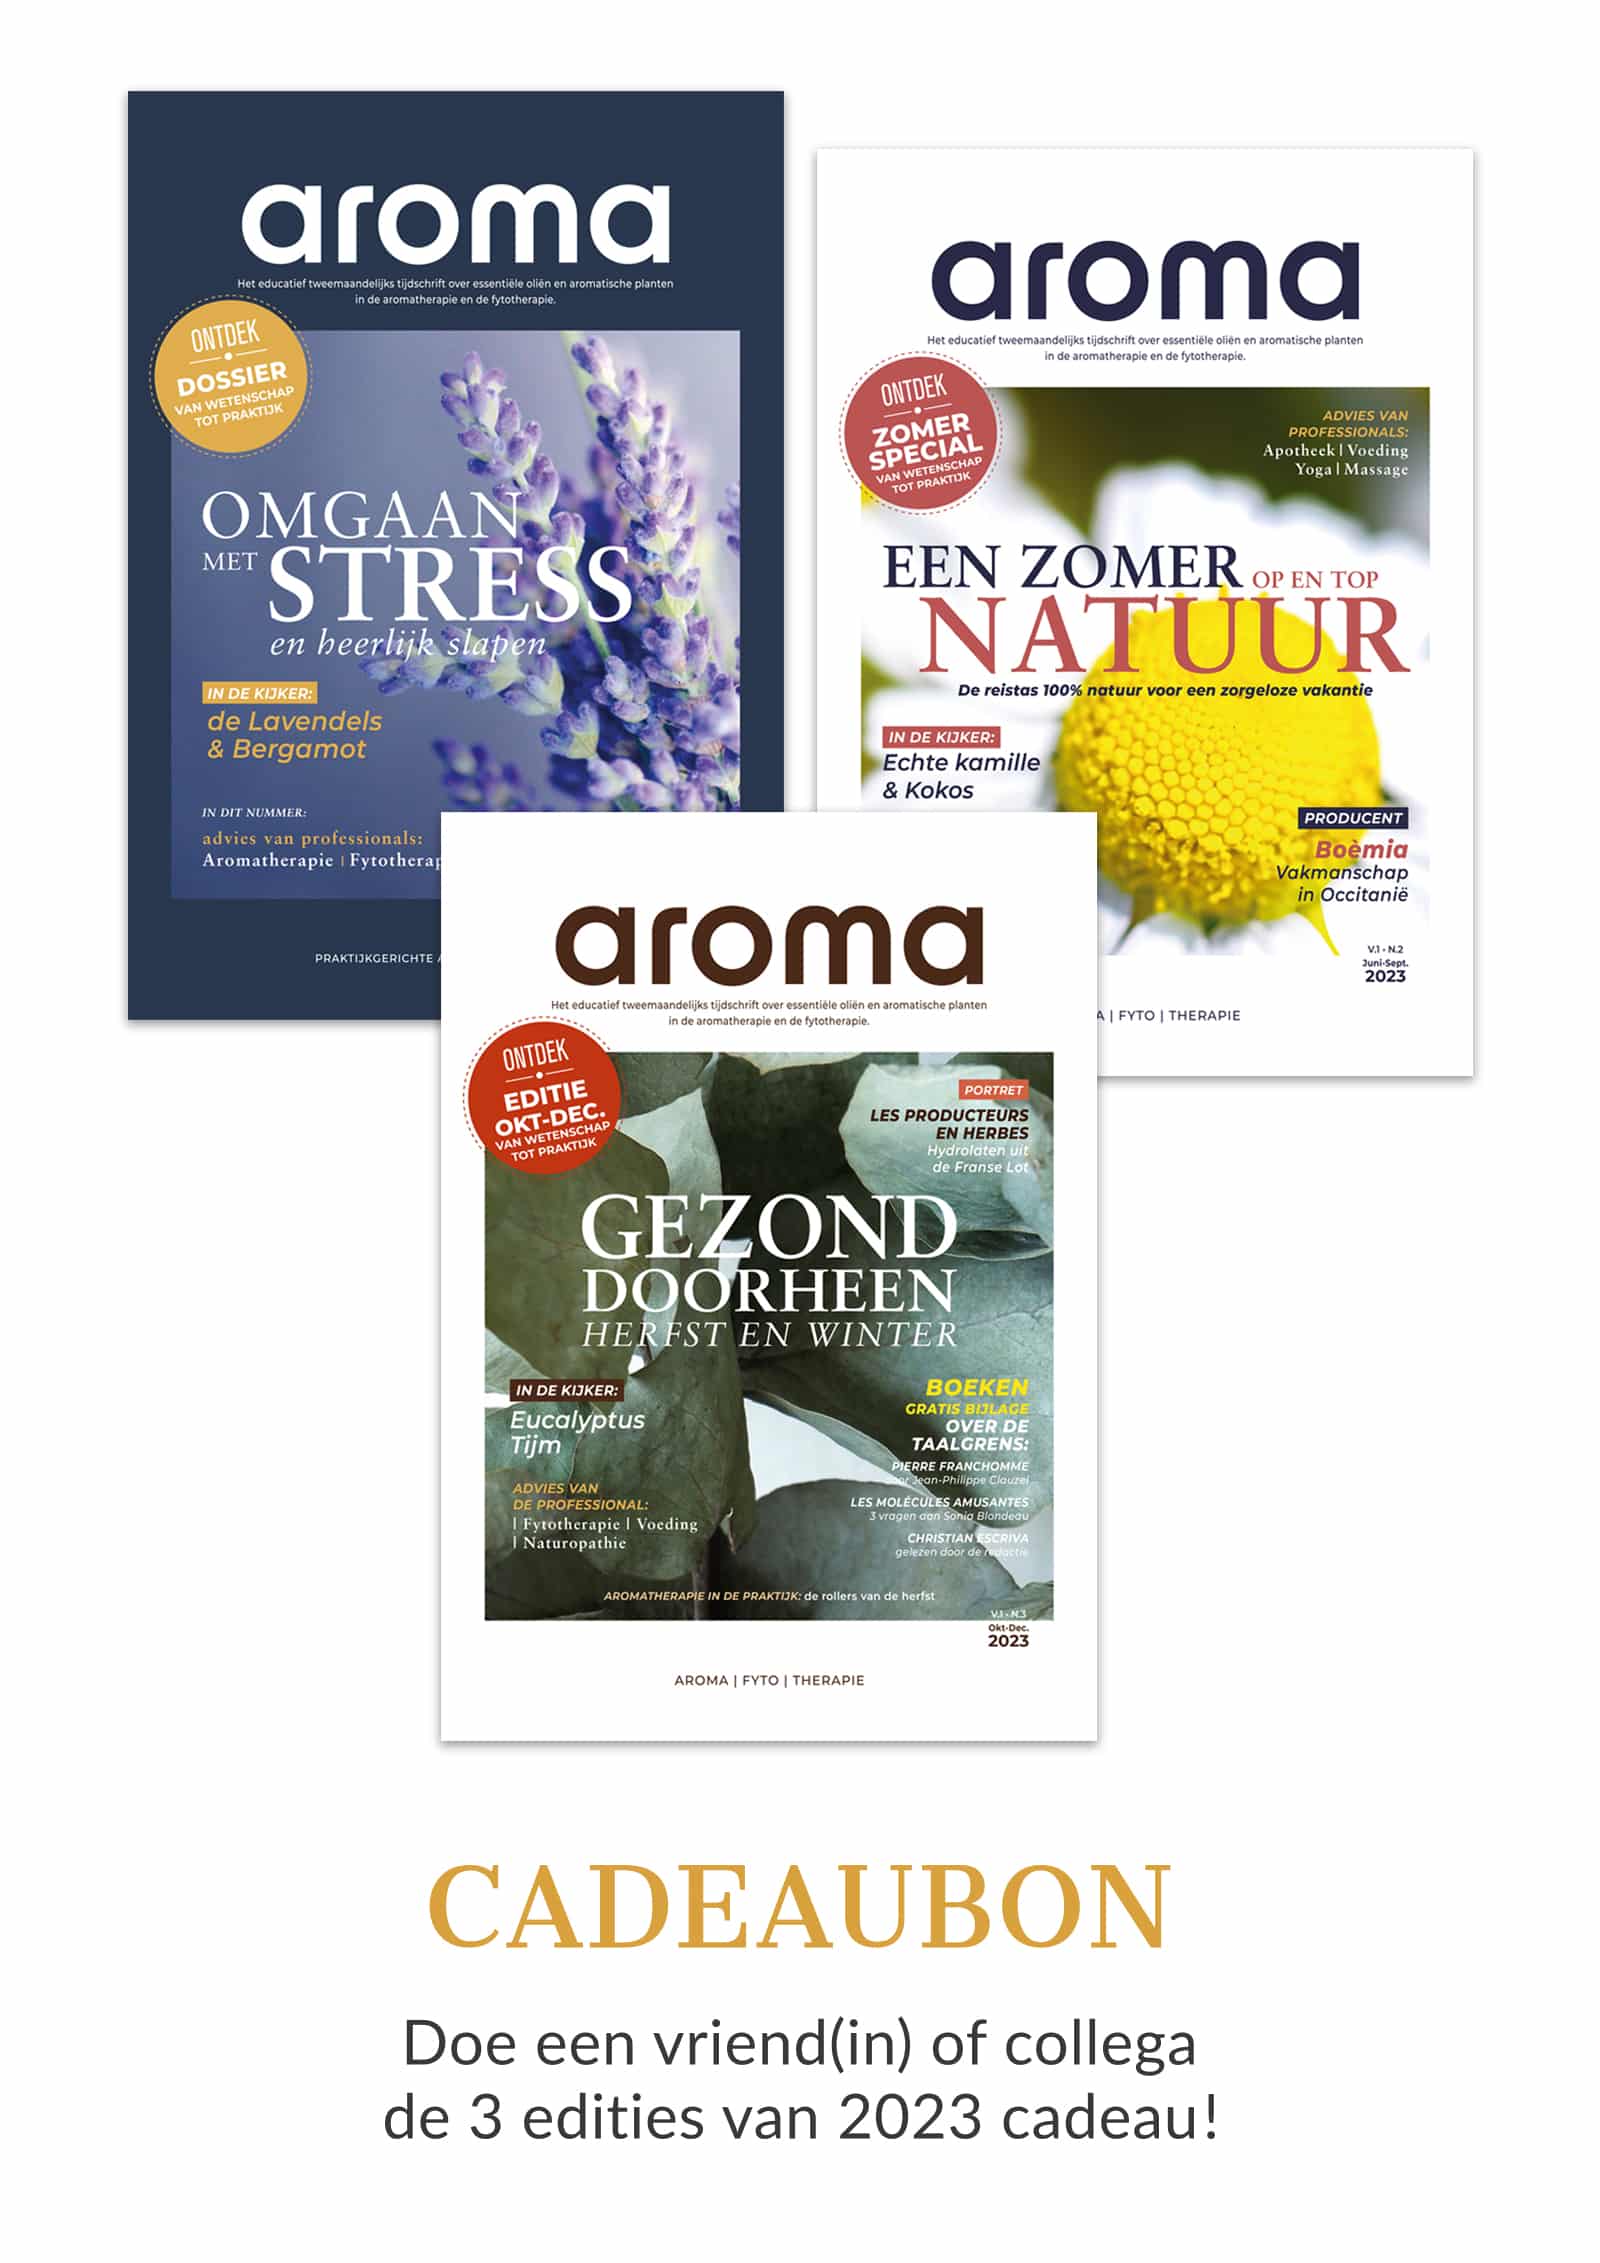 aroma – Het tijdschrift Cadeaubon 2023